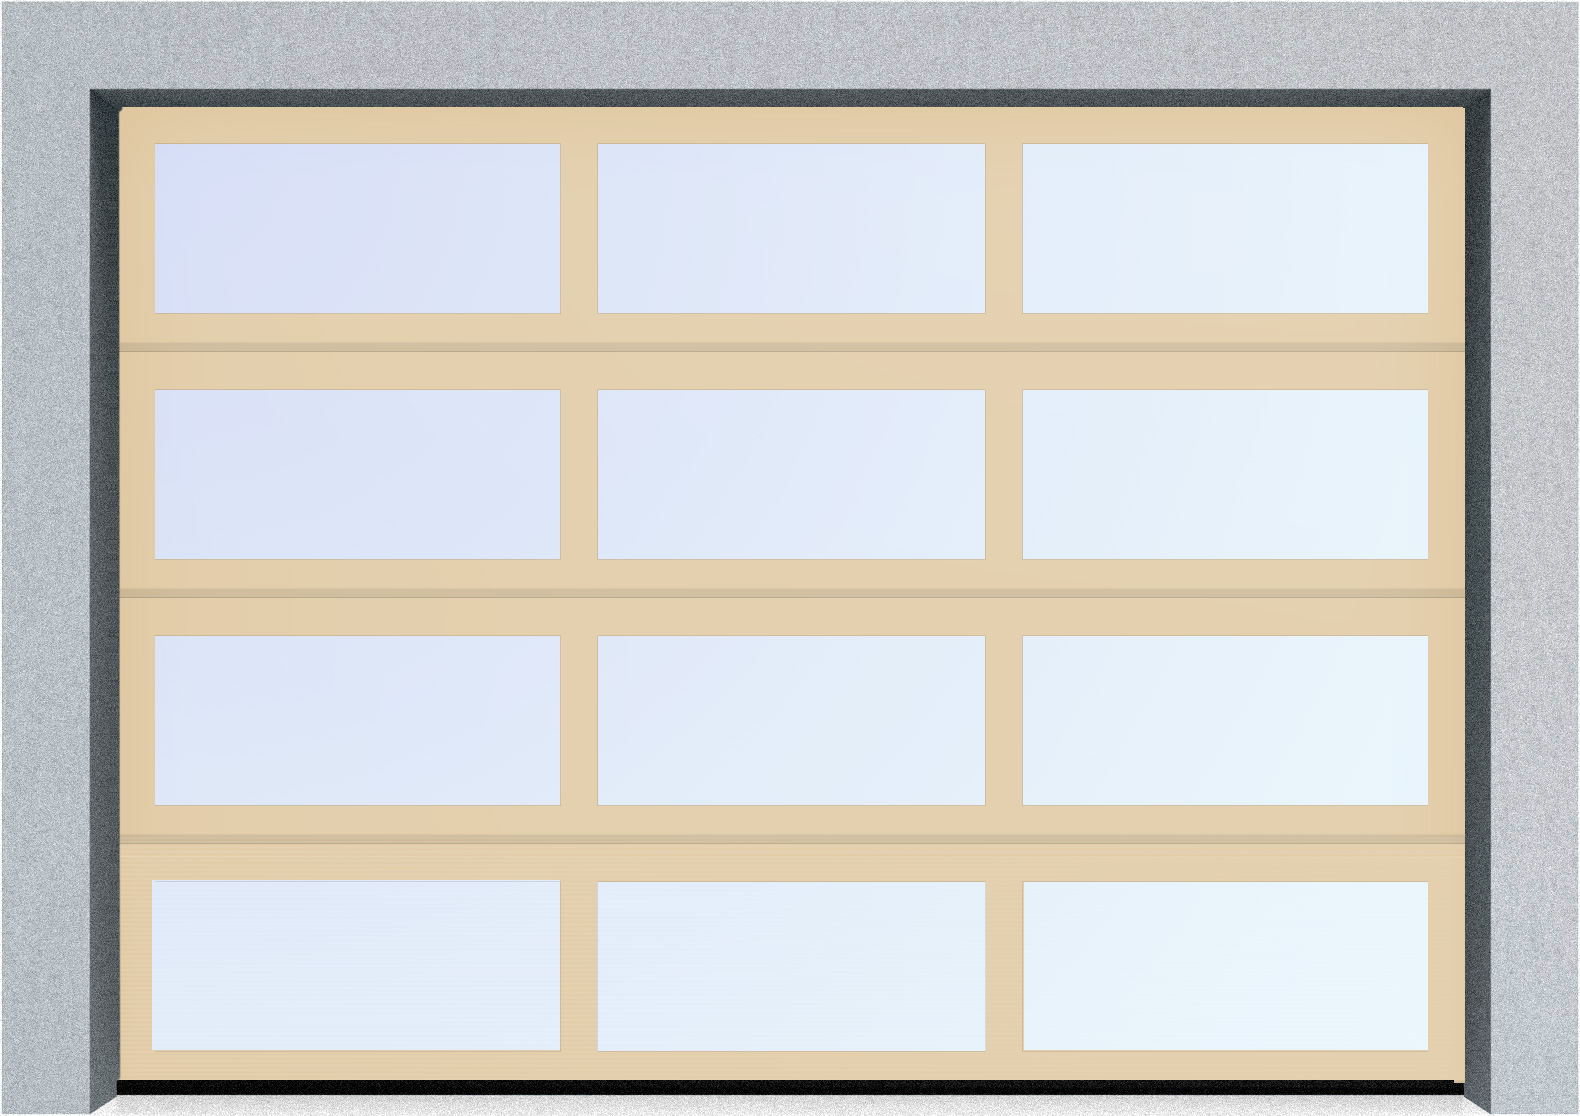  Секционные панорамные ворота серии AluTrend (АЛП) 2500х2500 нижняя панель стандартные цвета, фото 1 